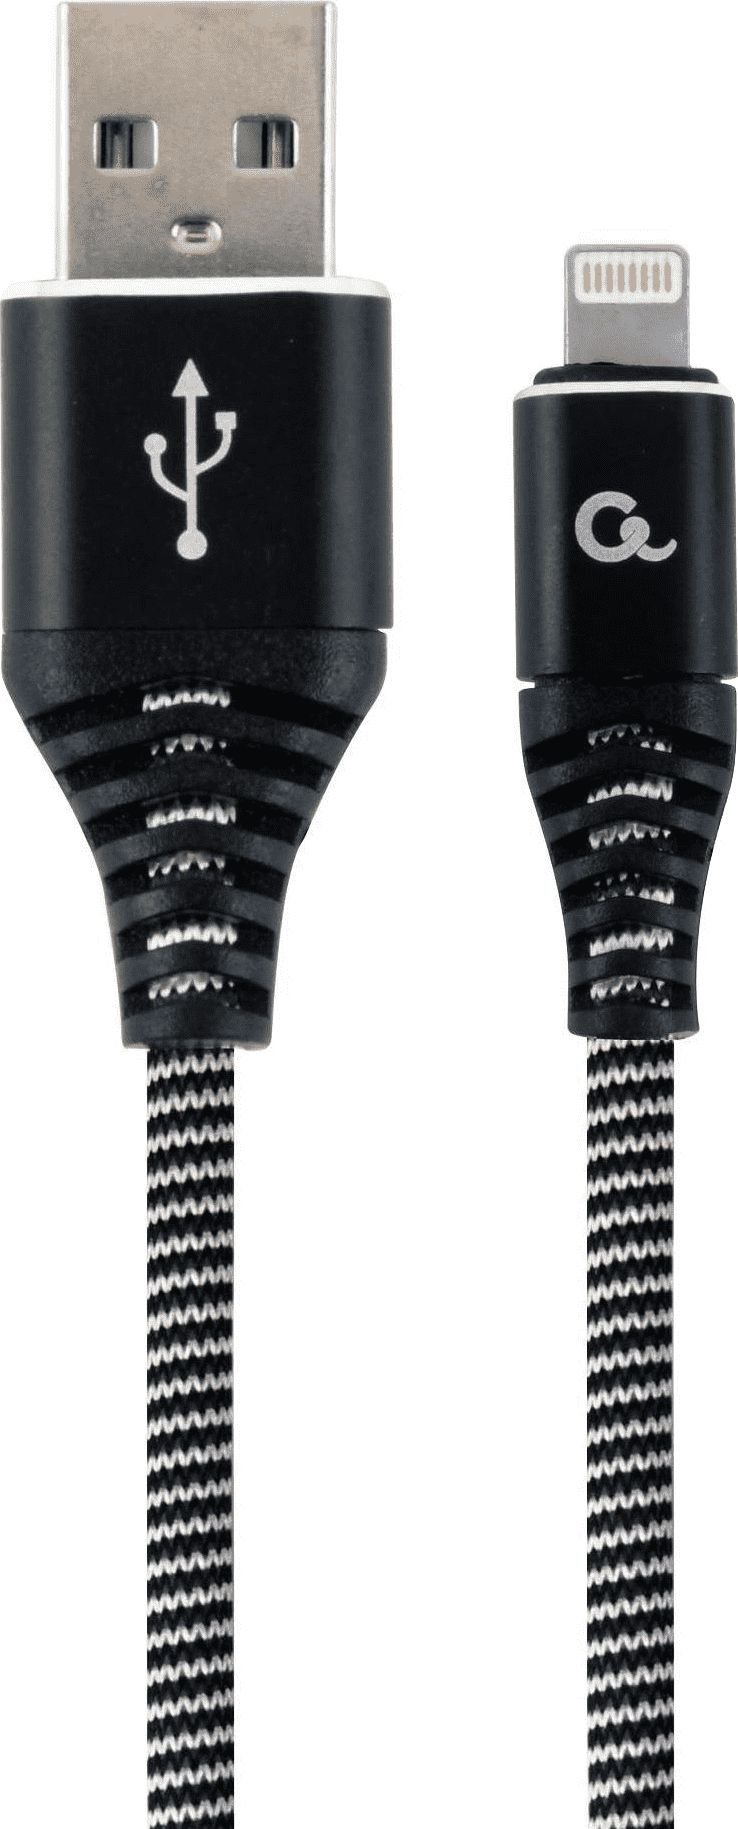 Cablu Premiu de date si incarcare, bumbac impletit, 8-pin , 2 m, alb/negru `CC-USB2B-AMLM-2M-BW`